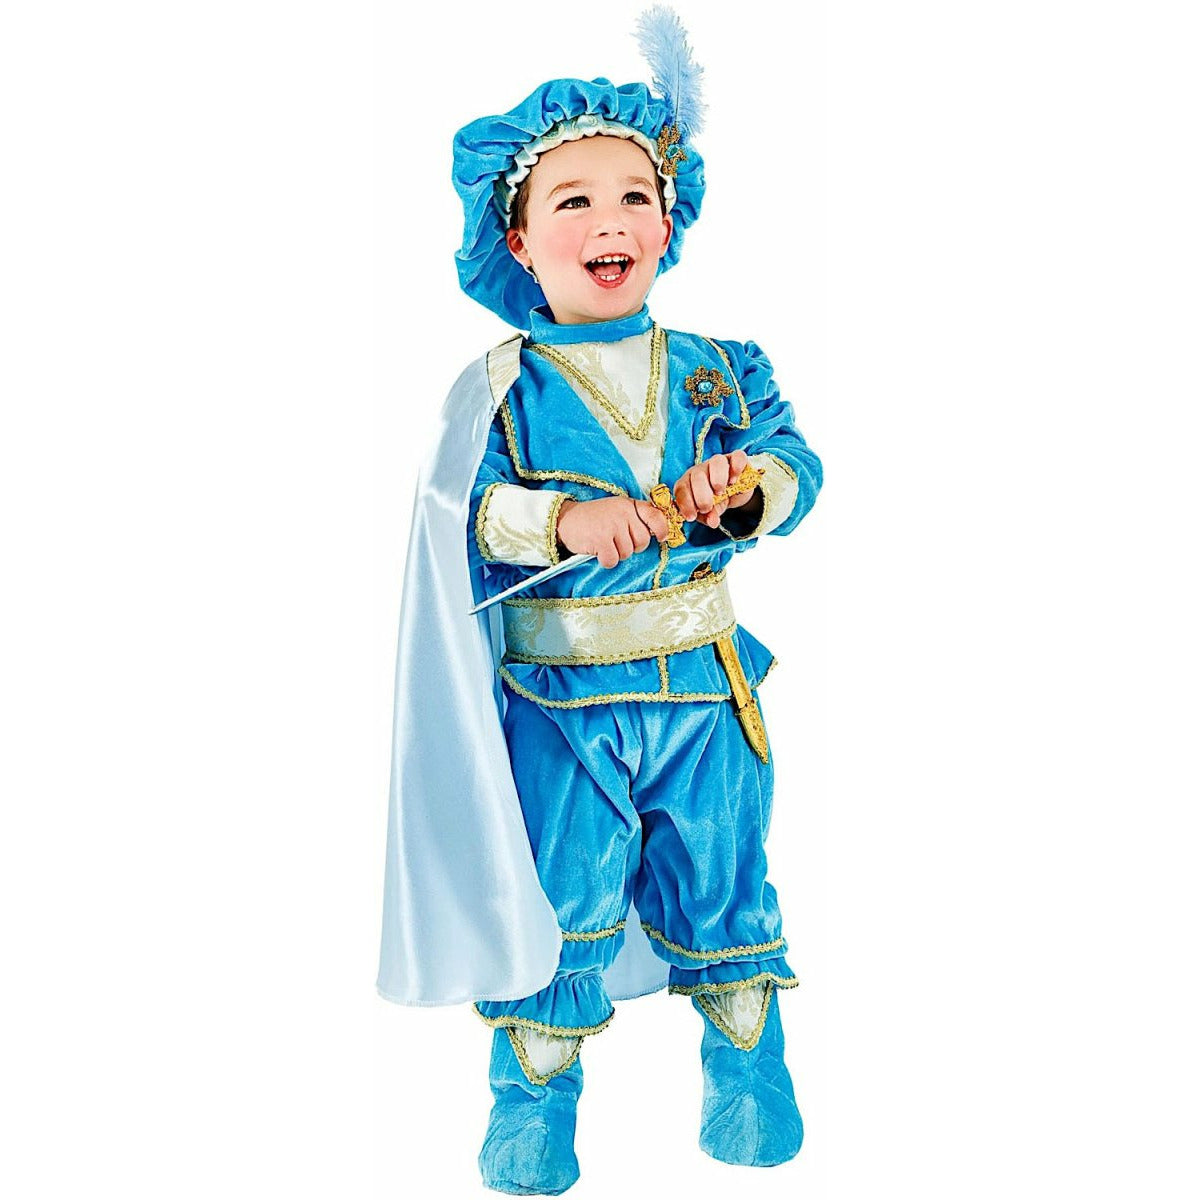 Principino Azzurro - Mstore016 - Carnevale neonato - Veneziano